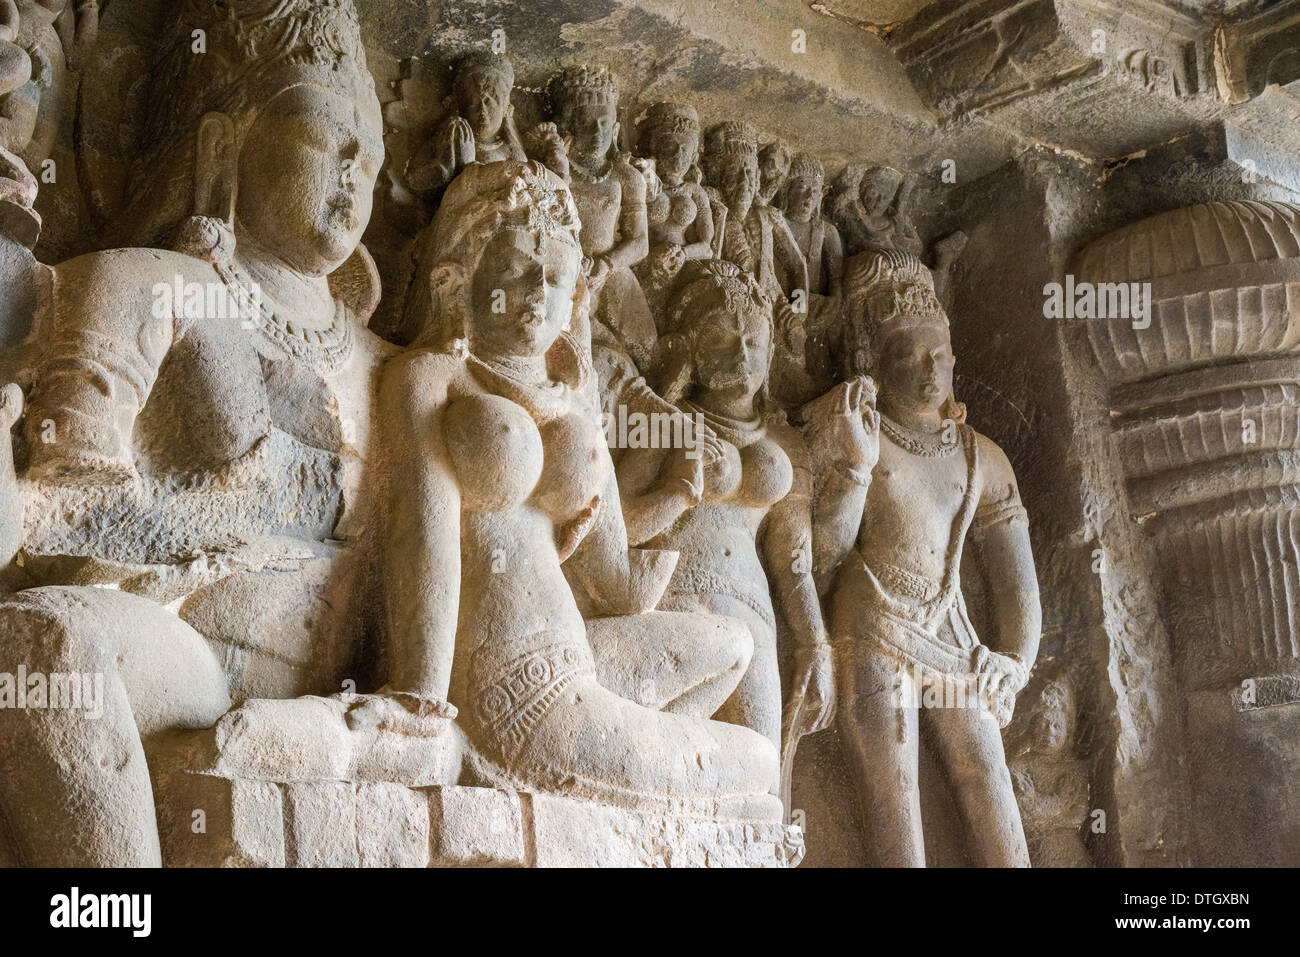 Sculptures en pierre dans la grotte 29, le Kailashanatha grotte, les grottes d'Ellora, UNESCO World Heritage Site, Ellora, Maharashtra, Inde Banque D'Images